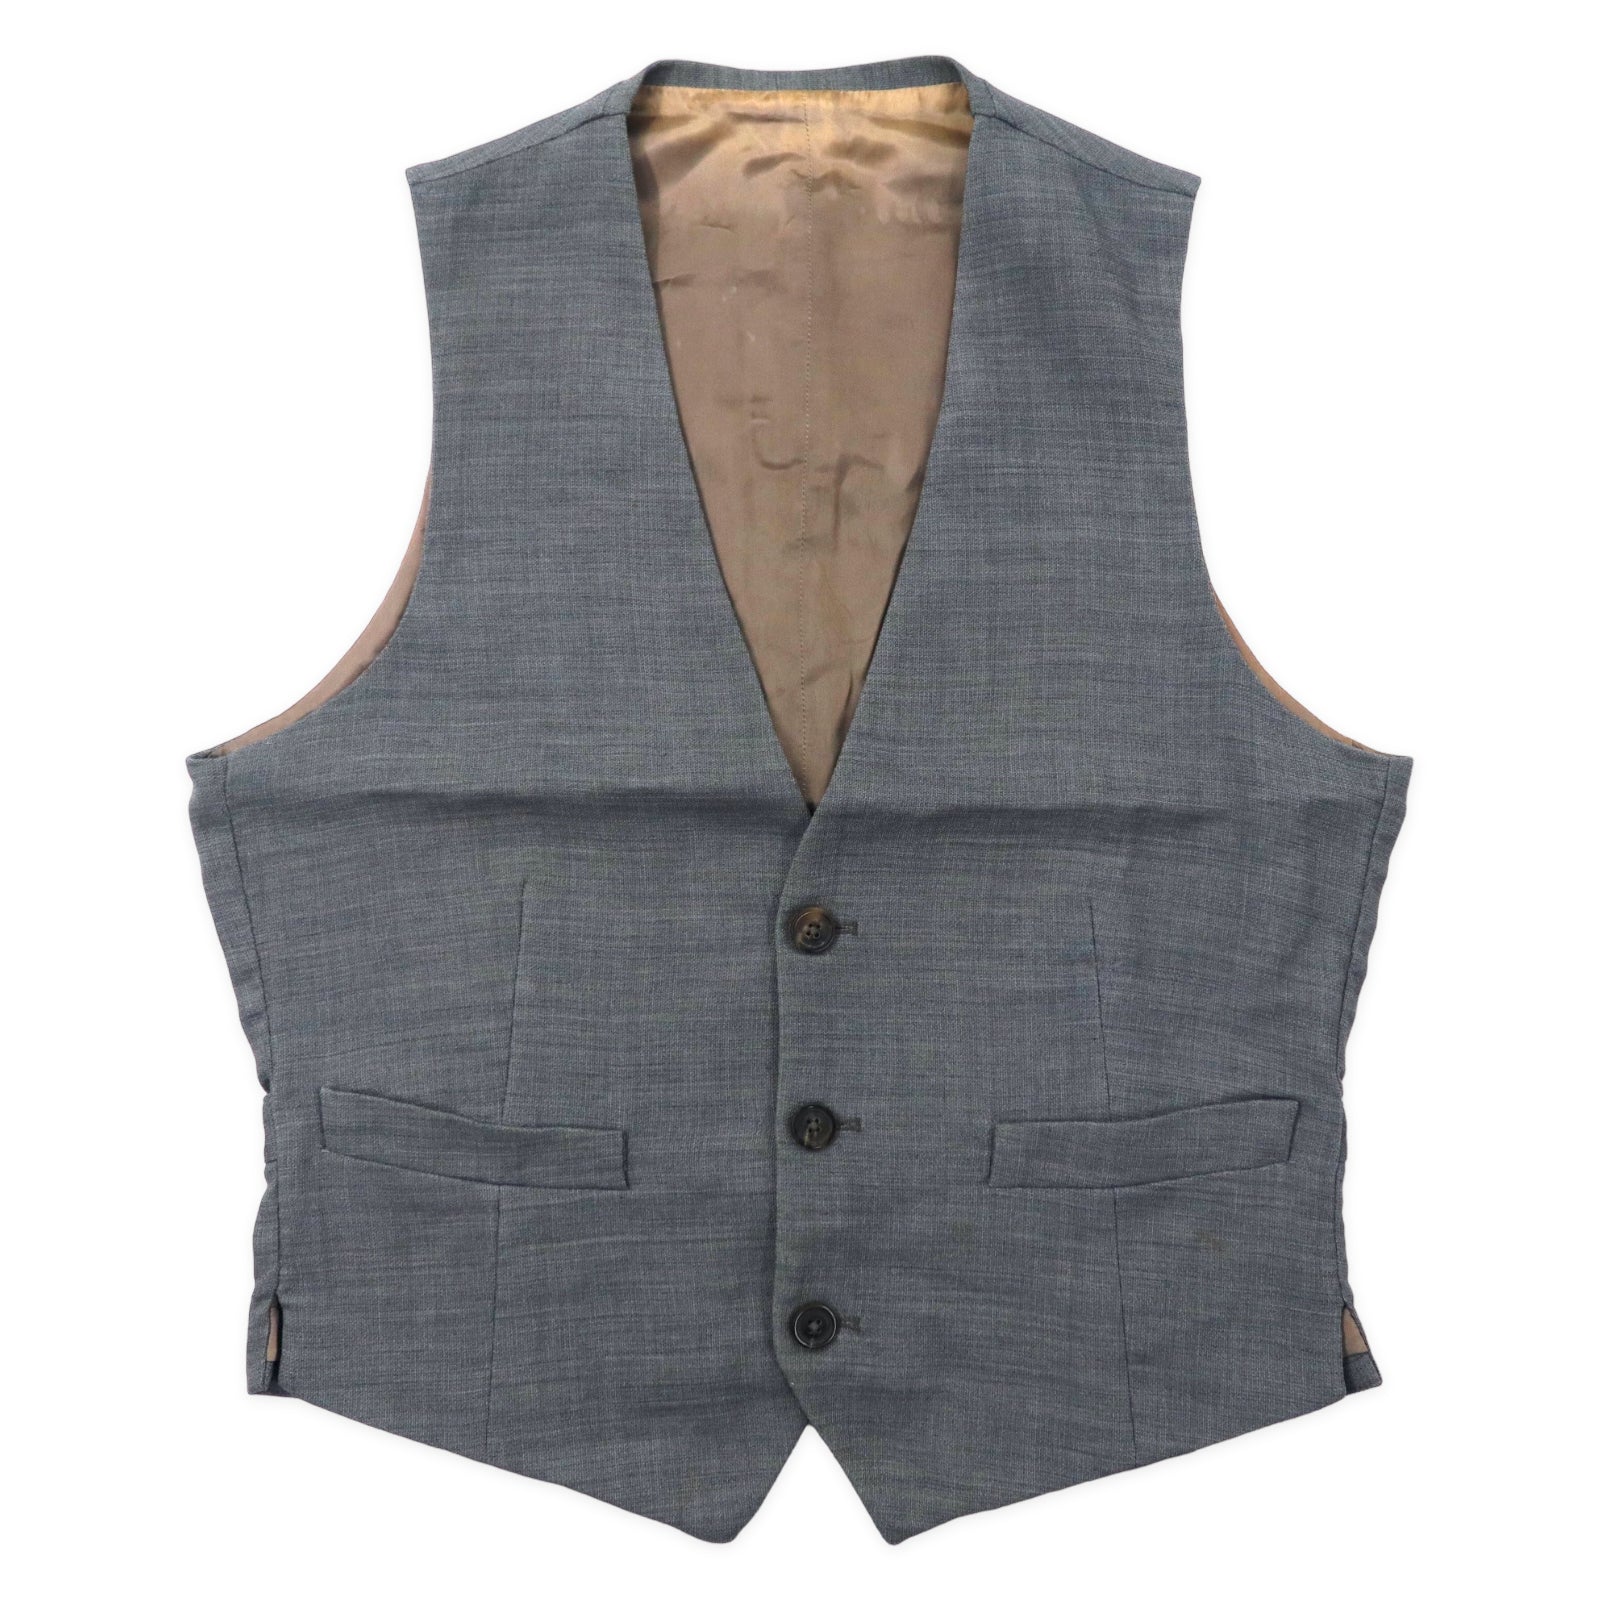 Maison Martin Margiela 14 WaistCoat Vest 46 Gray Wool Italy Made 